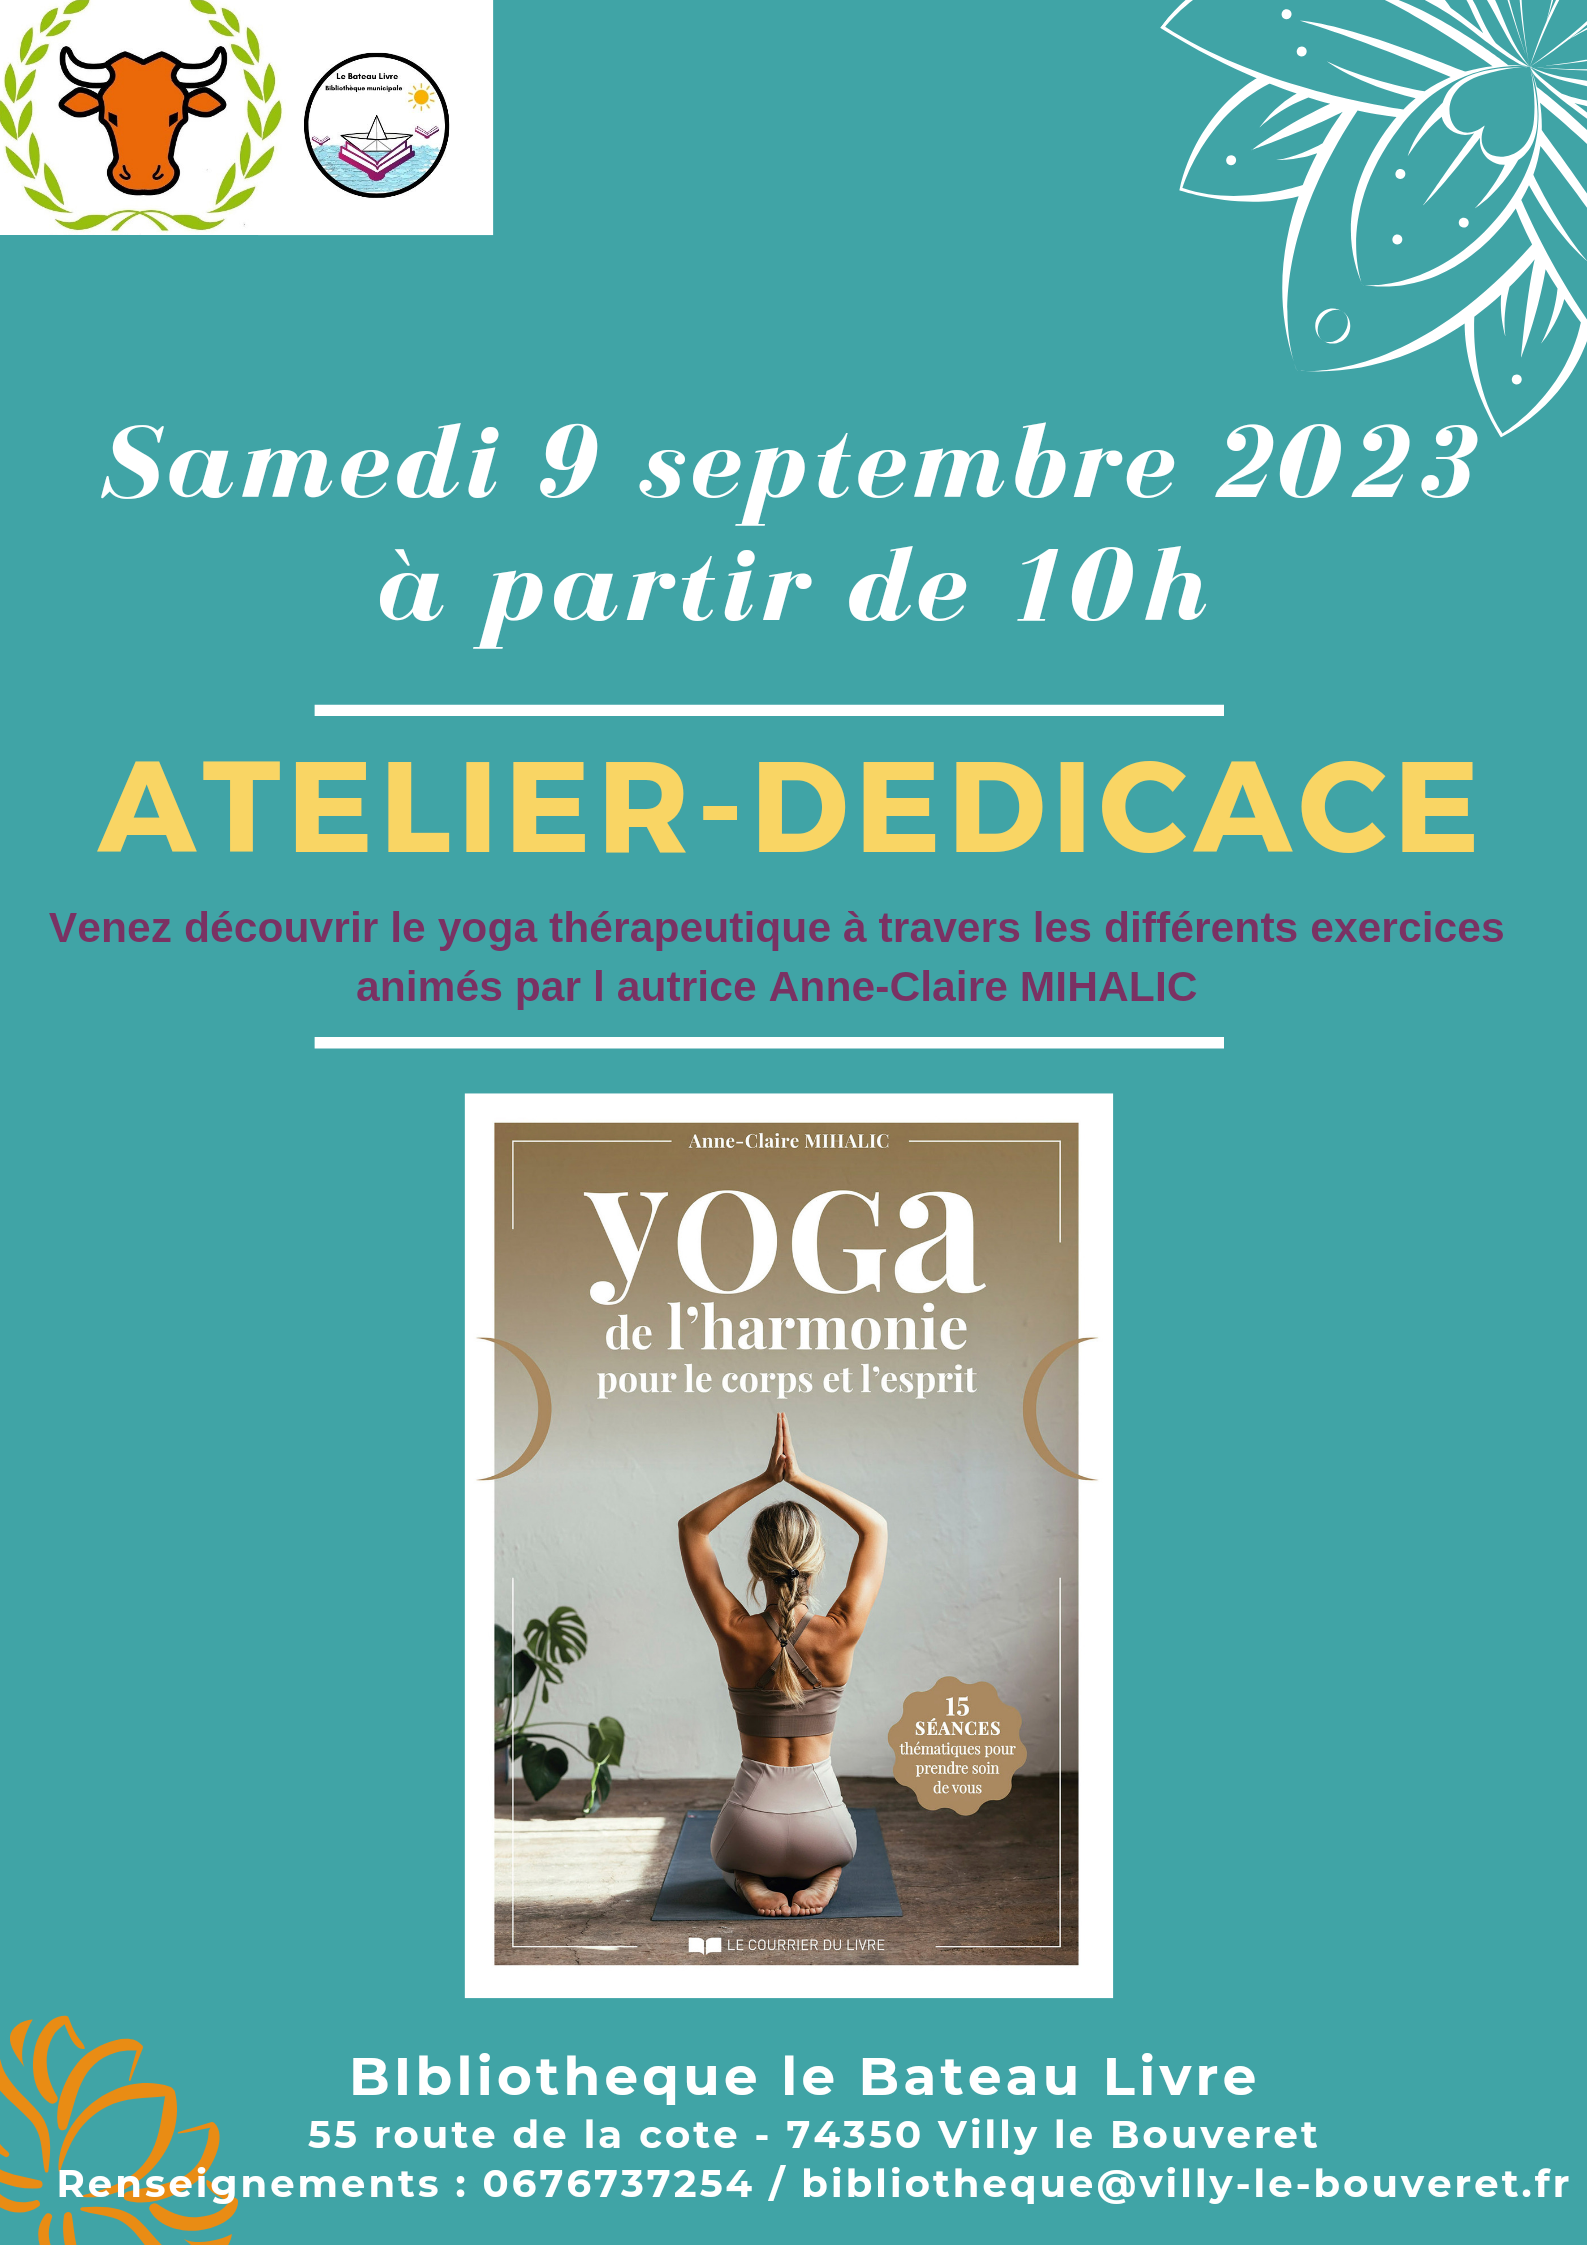 Atelier dédicace avec Anne-Claire Mihalic : venez faire dédicacer votre ouvrage et découvrir le yoga thérapeutique.